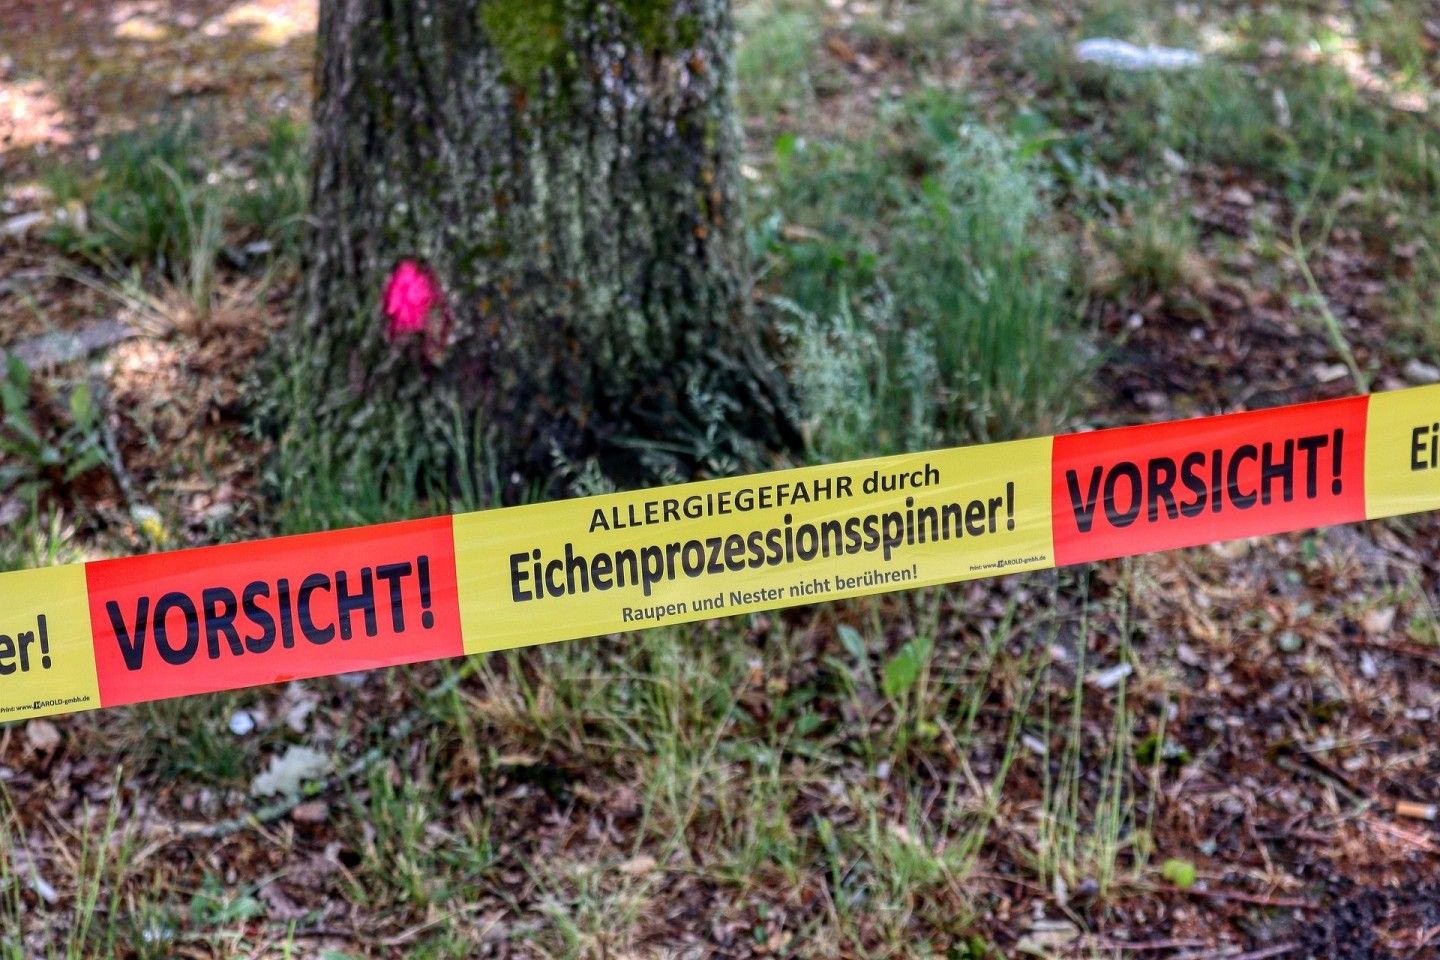 Die Stadt Verl warnt vor den Raupen des Eichenprozessionsspinners. / ©Pixabay.com